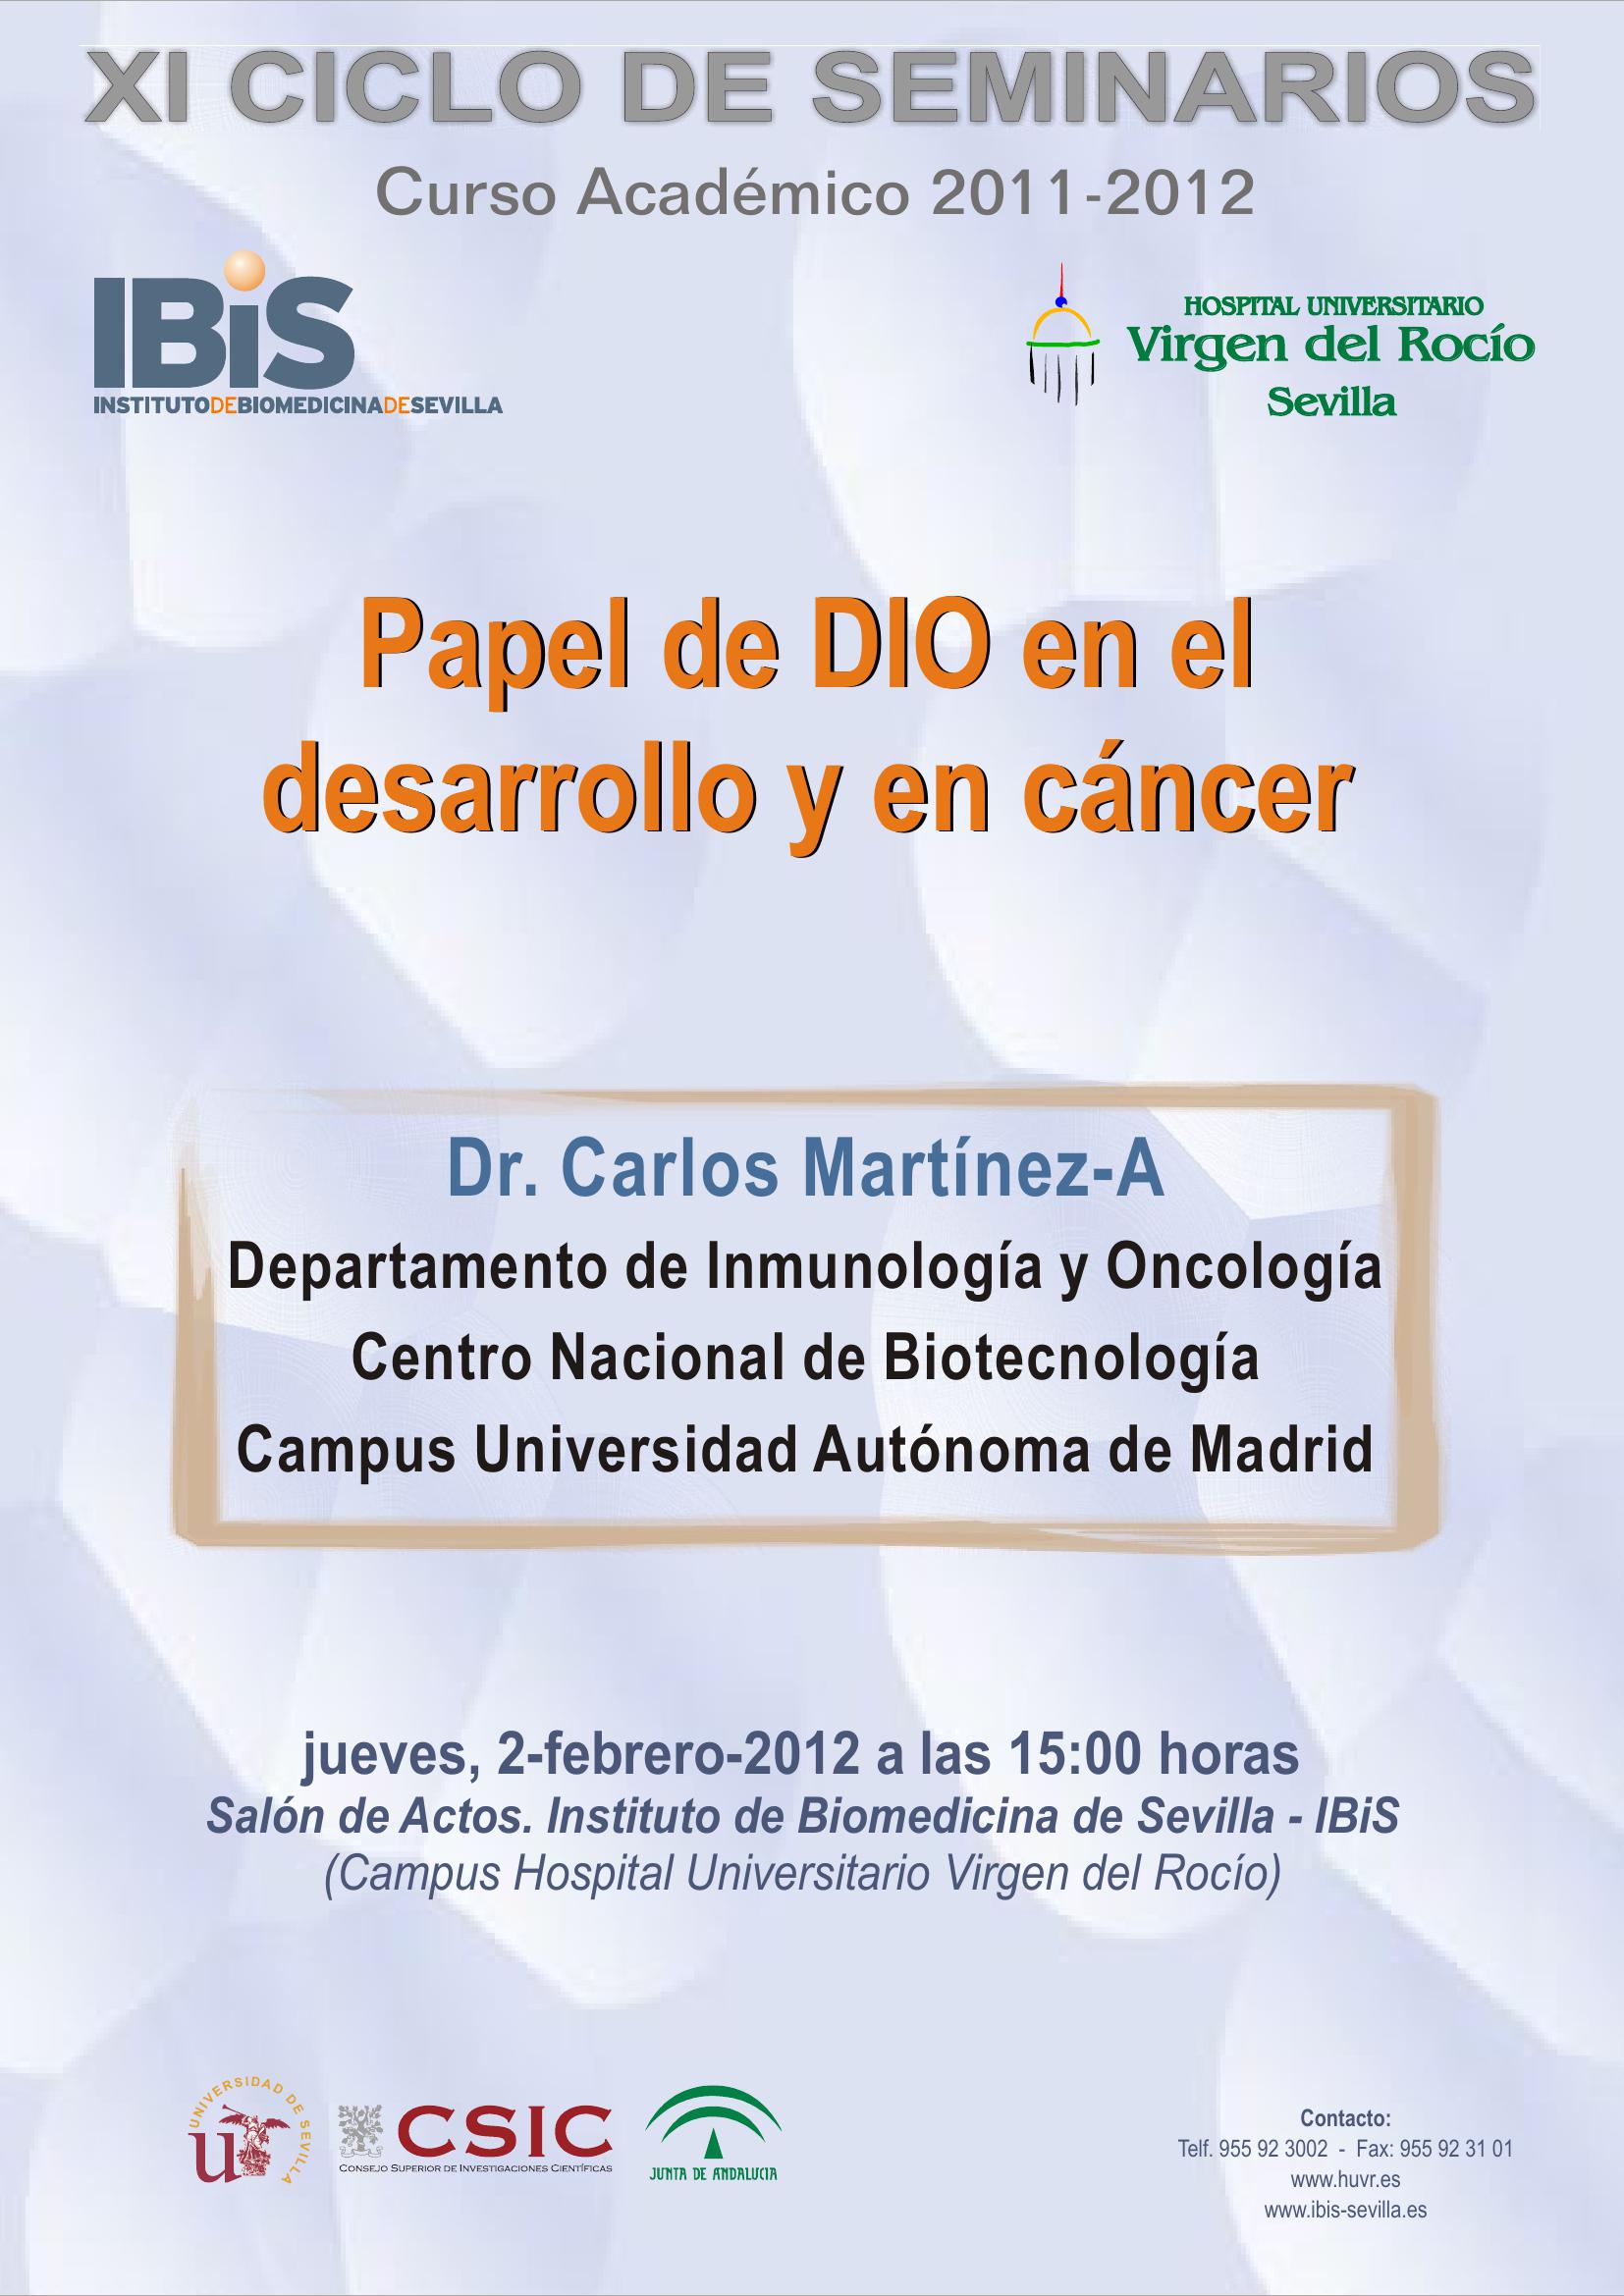 Poster: Papel de DIO en el desarrollo y en cáncer